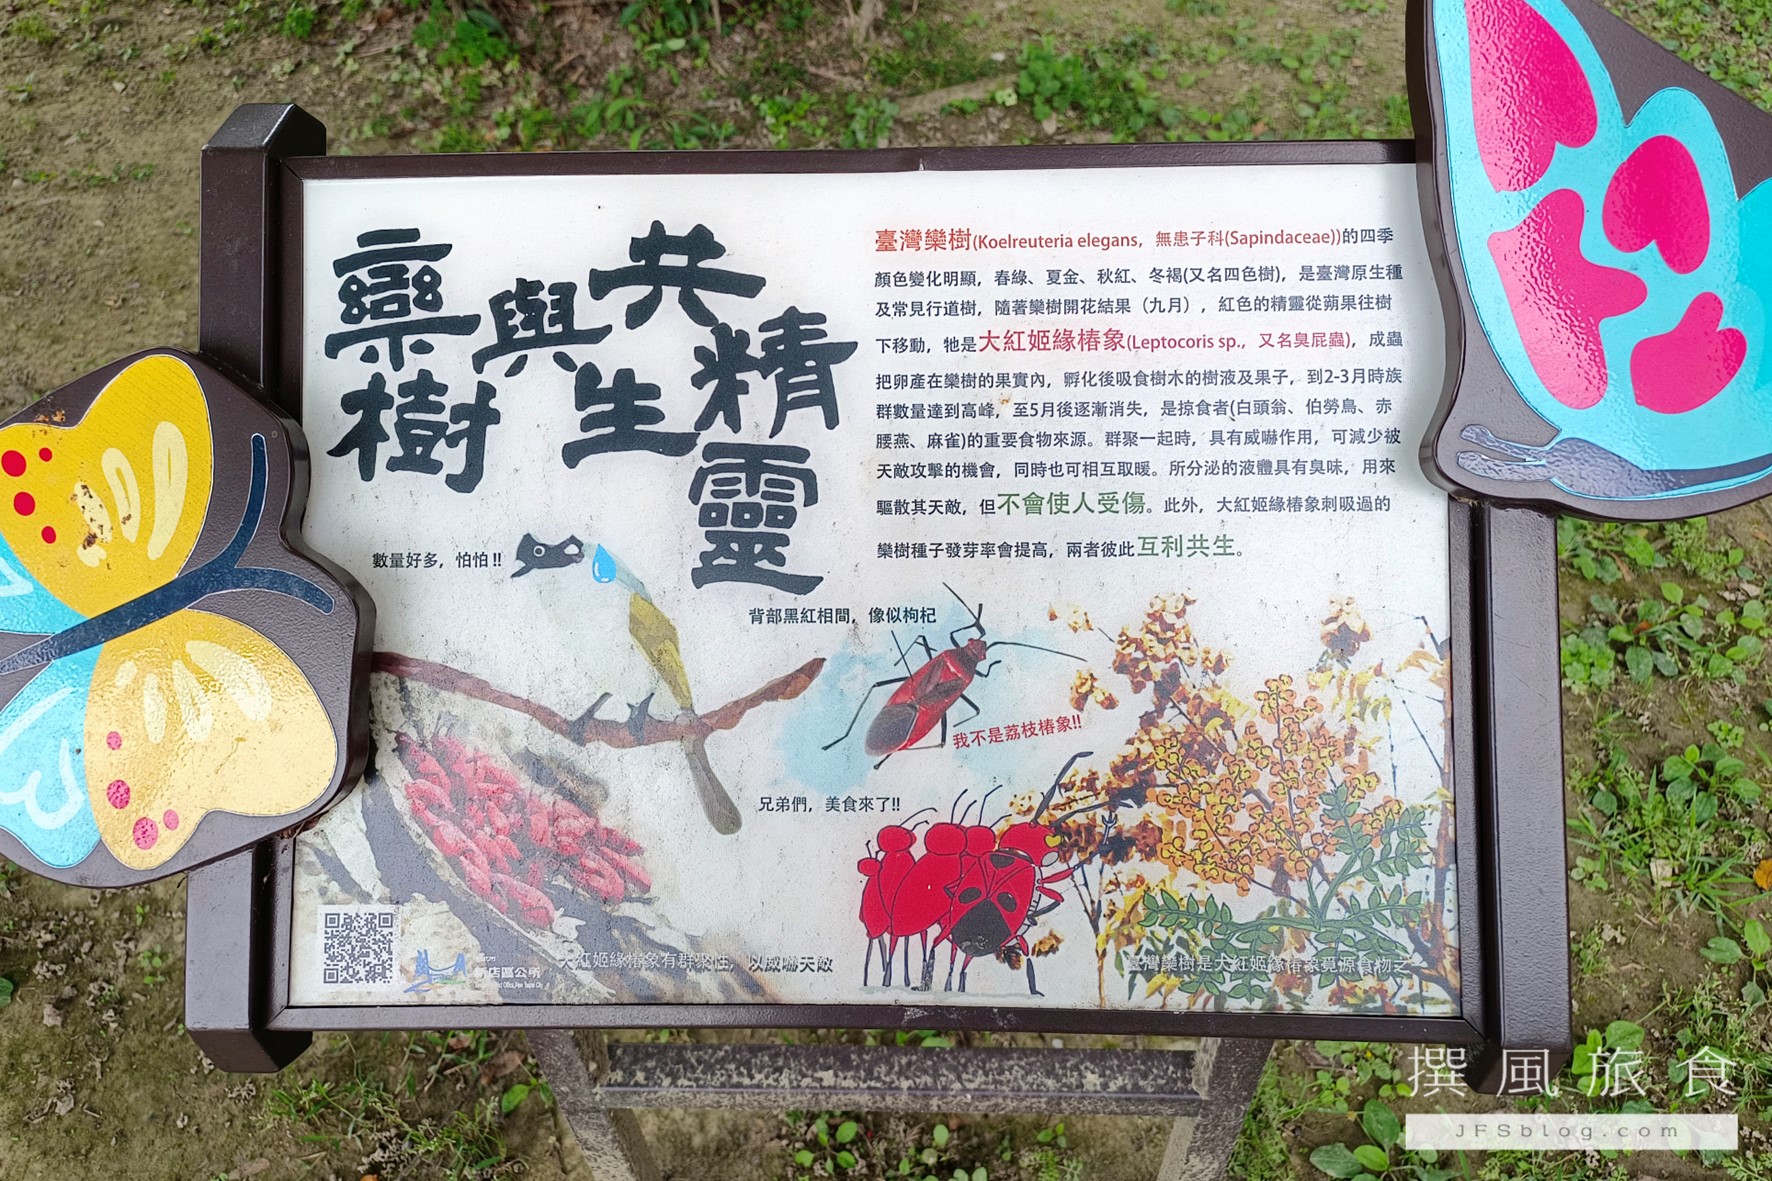 大紅姬緣椿象是生態系重要的昆蟲